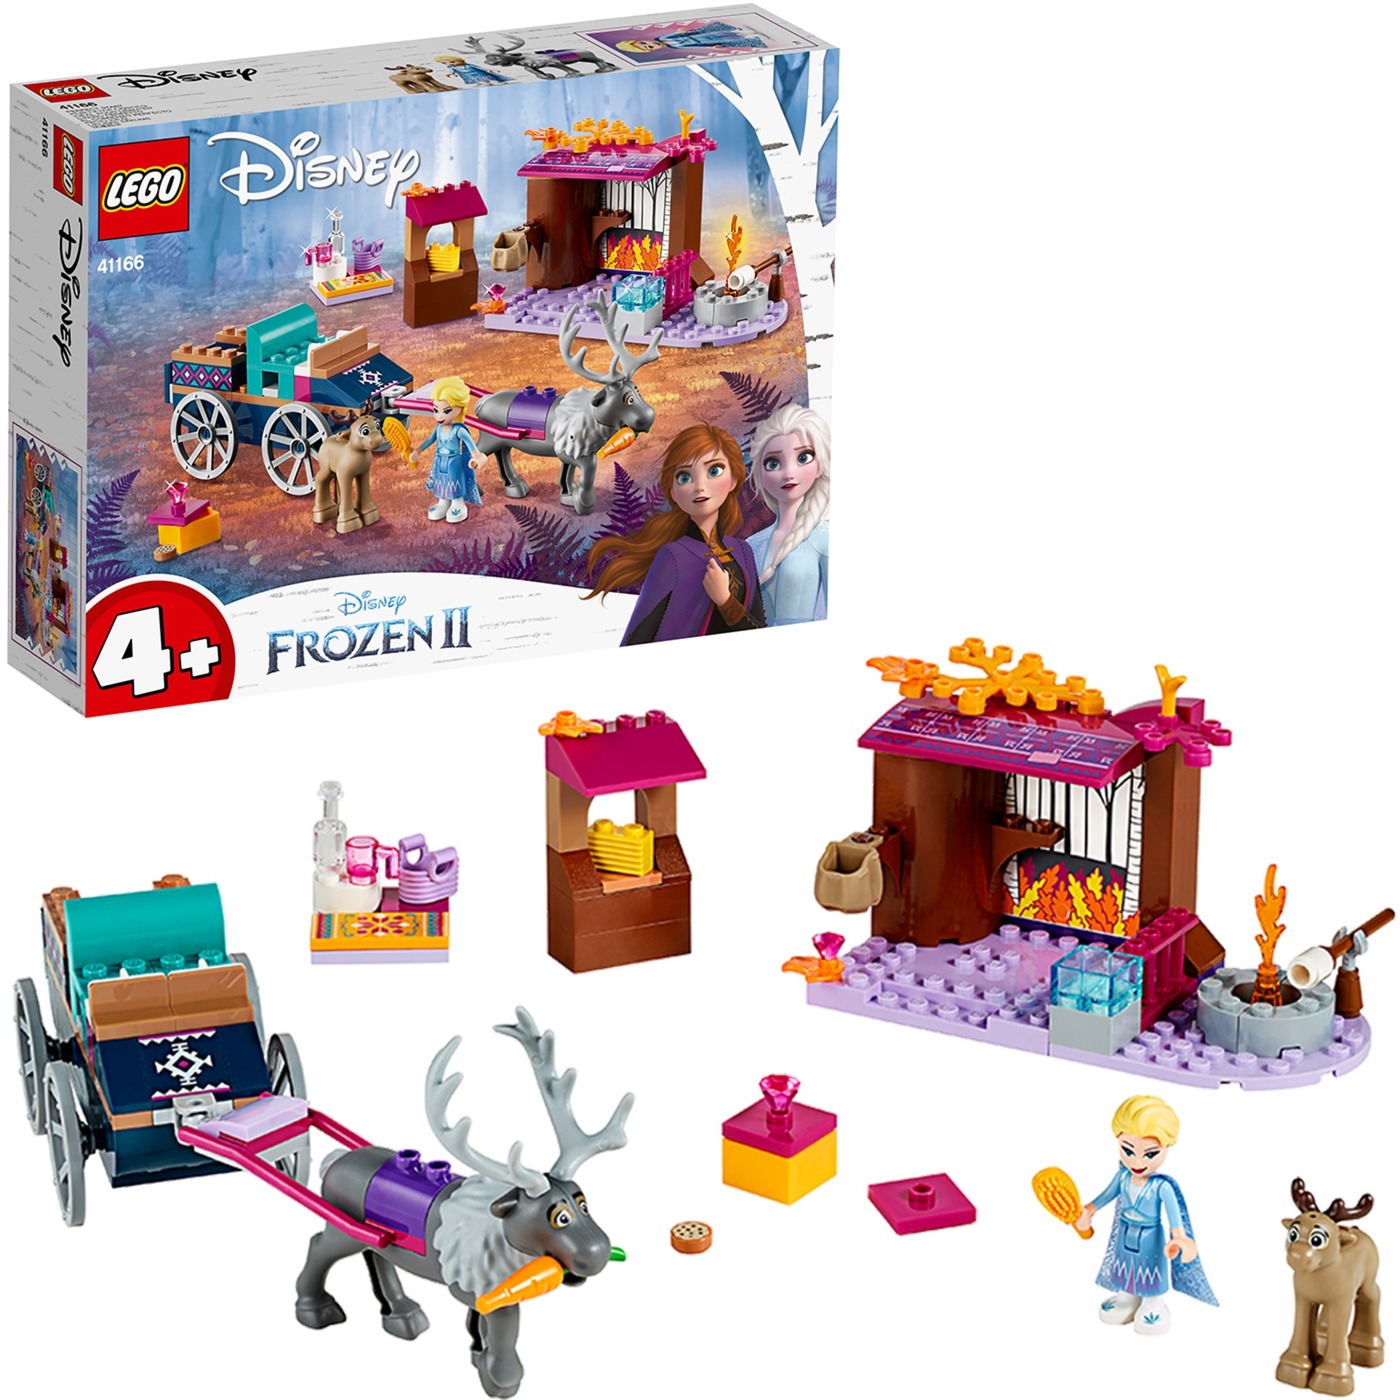 Image of Alternate - 41166 Disney Princess Elsa und die Rentierkutsche, Konstruktionsspielzeug online einkaufen bei Alternate